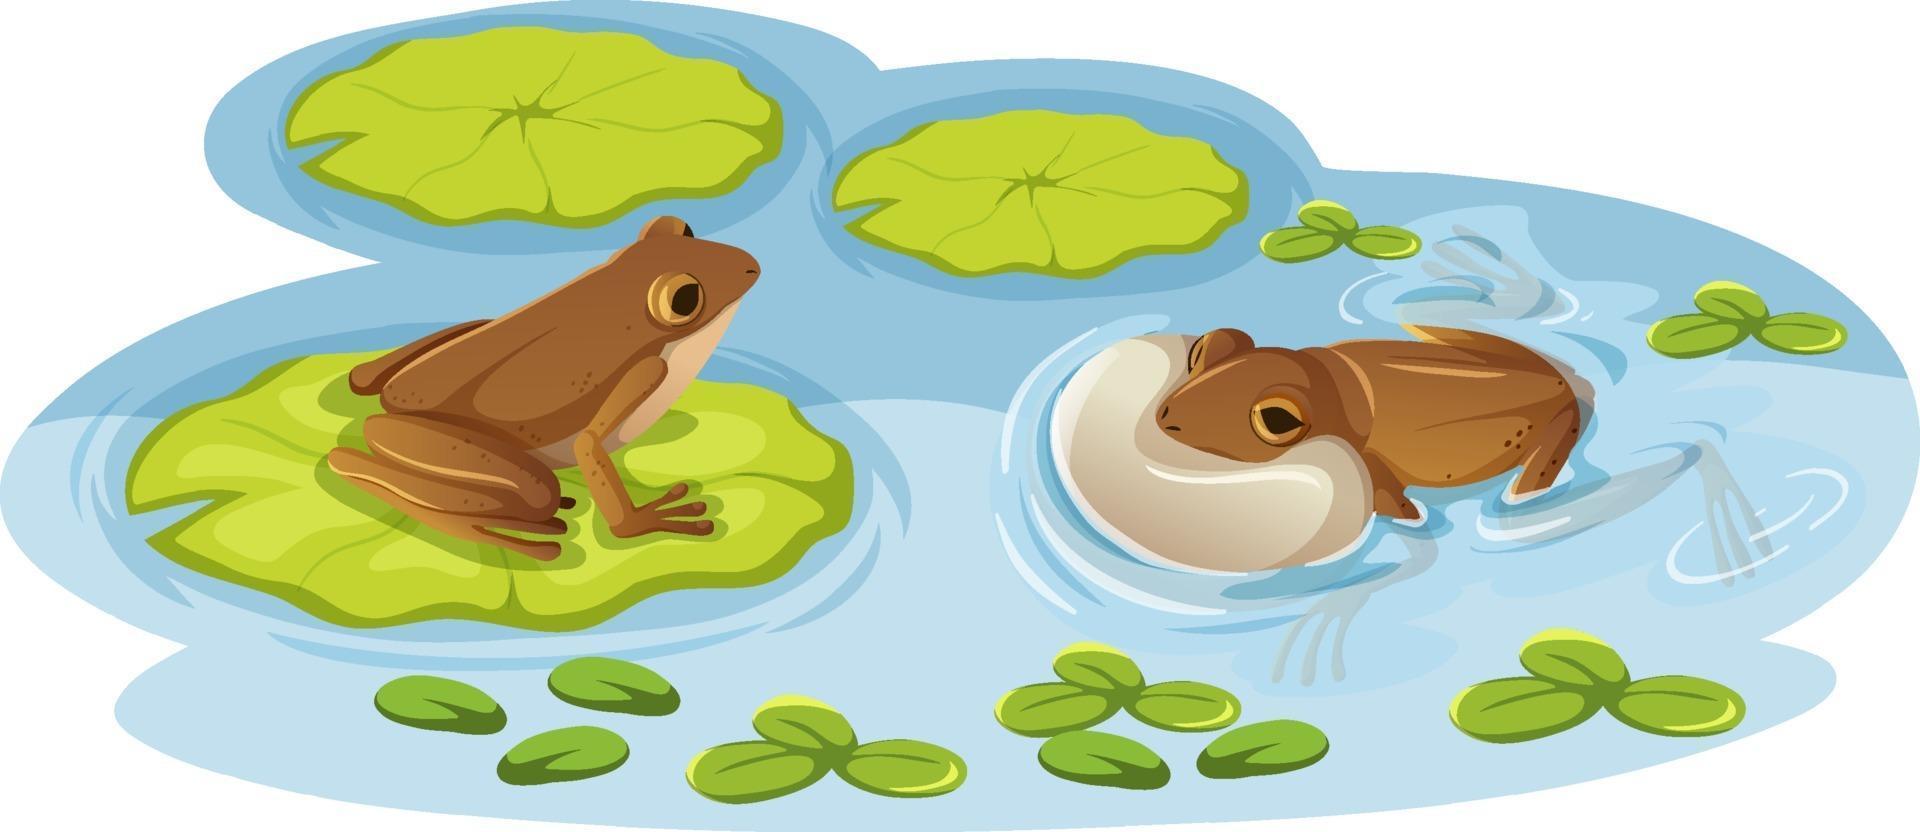 due rane su foglie di loto nell'acqua vettore